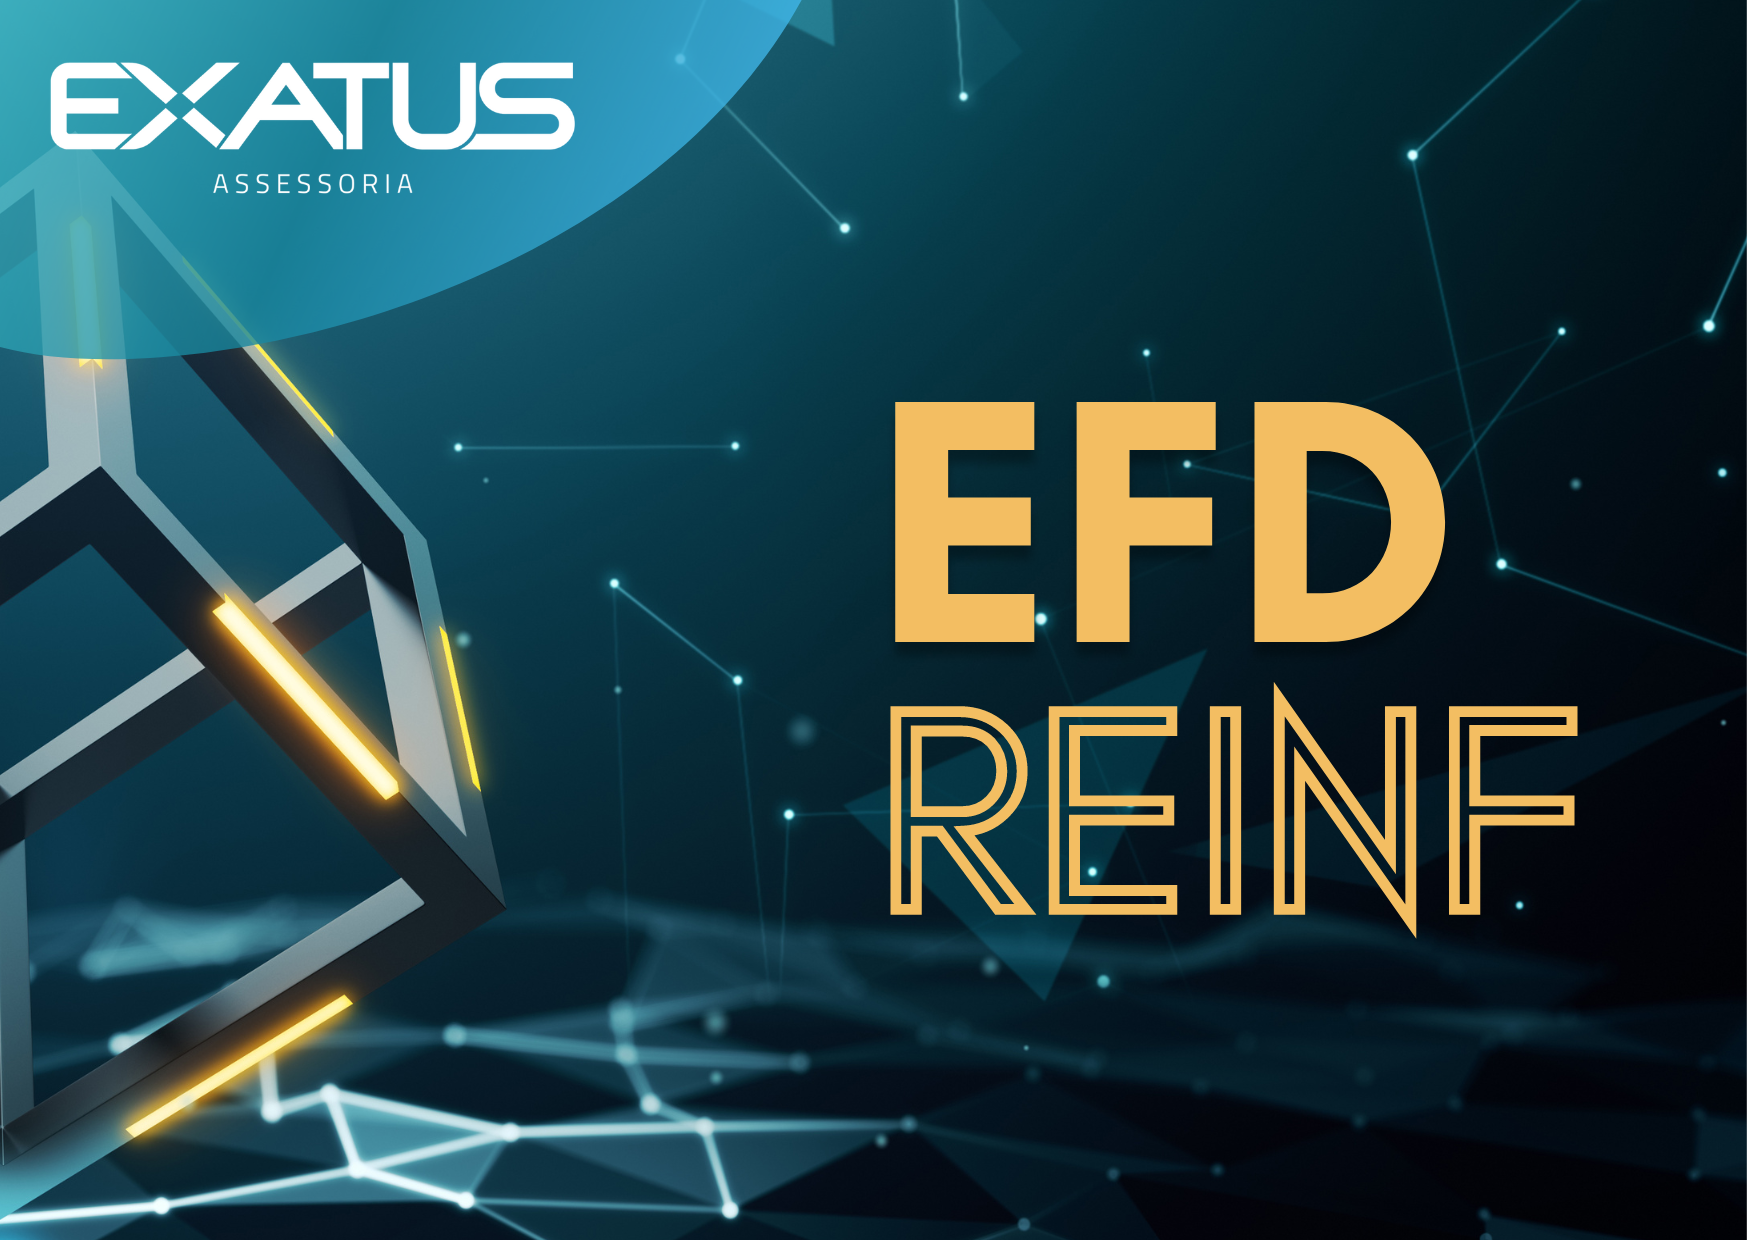 EFD-Reinf – Prorrogado para setembro envio do evento de IRRF e